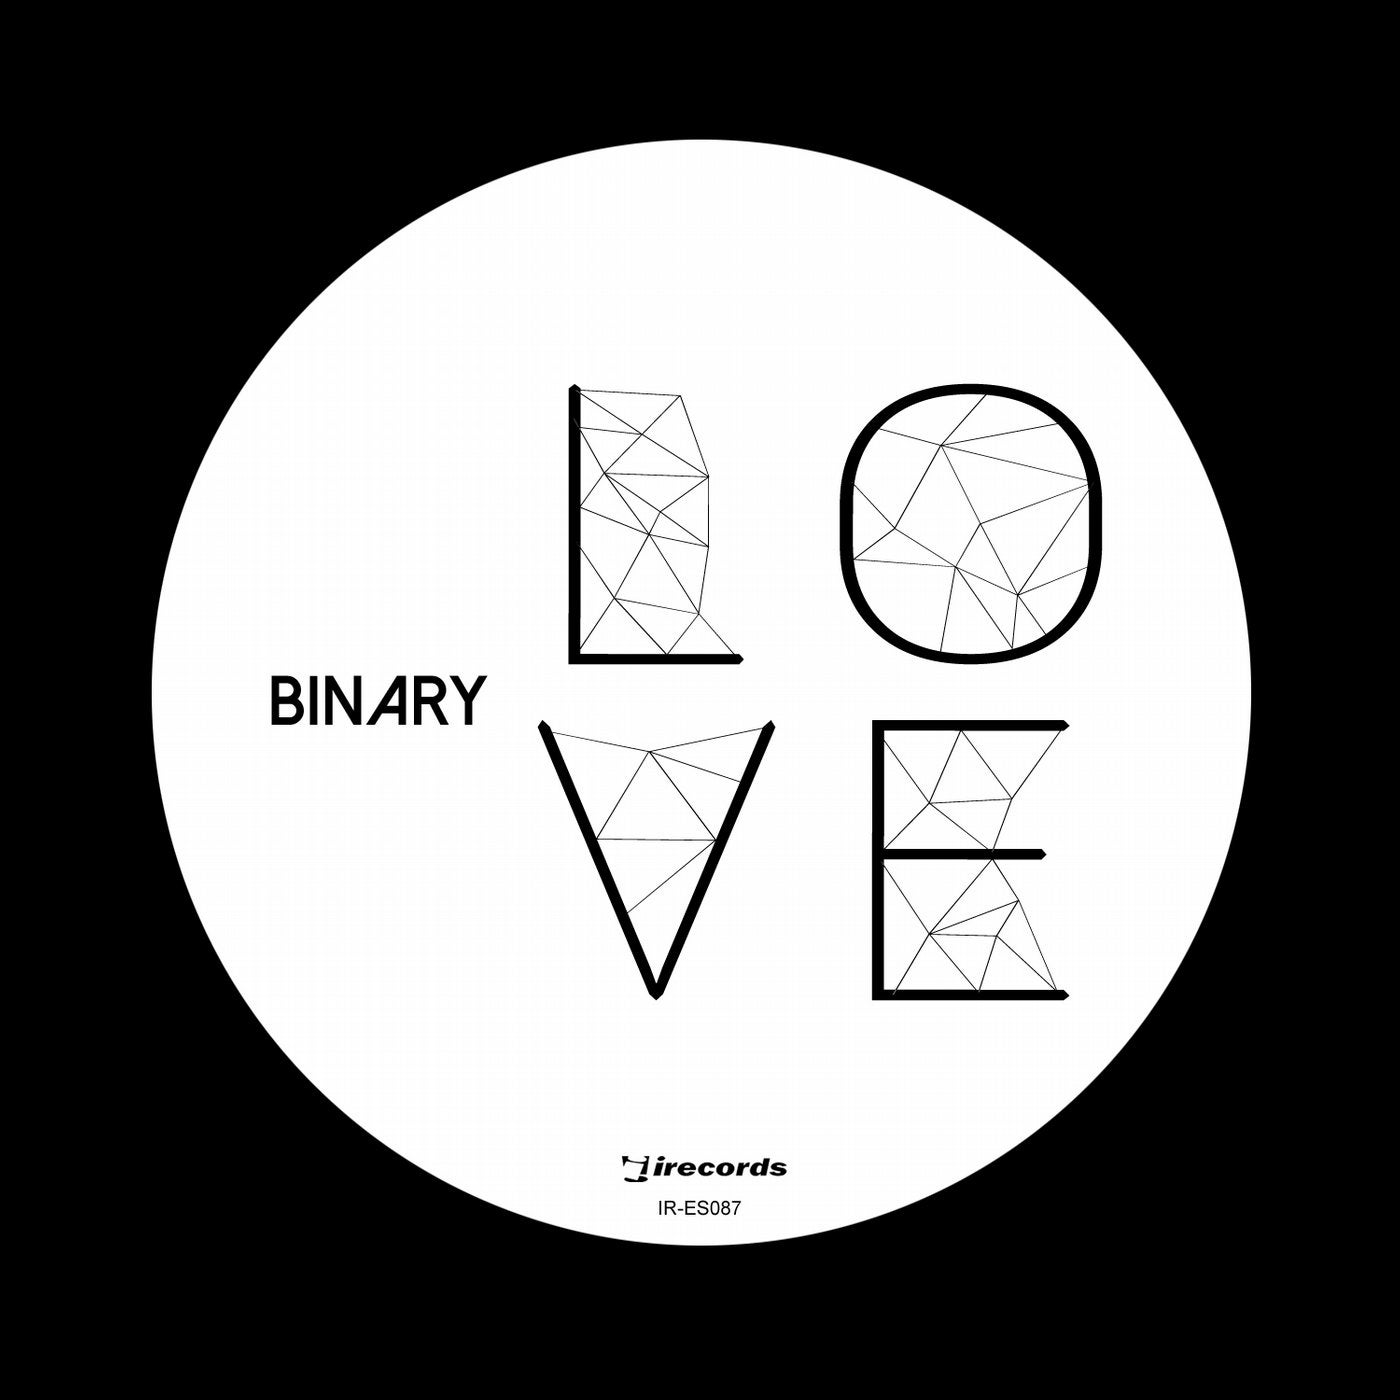 Binary Love